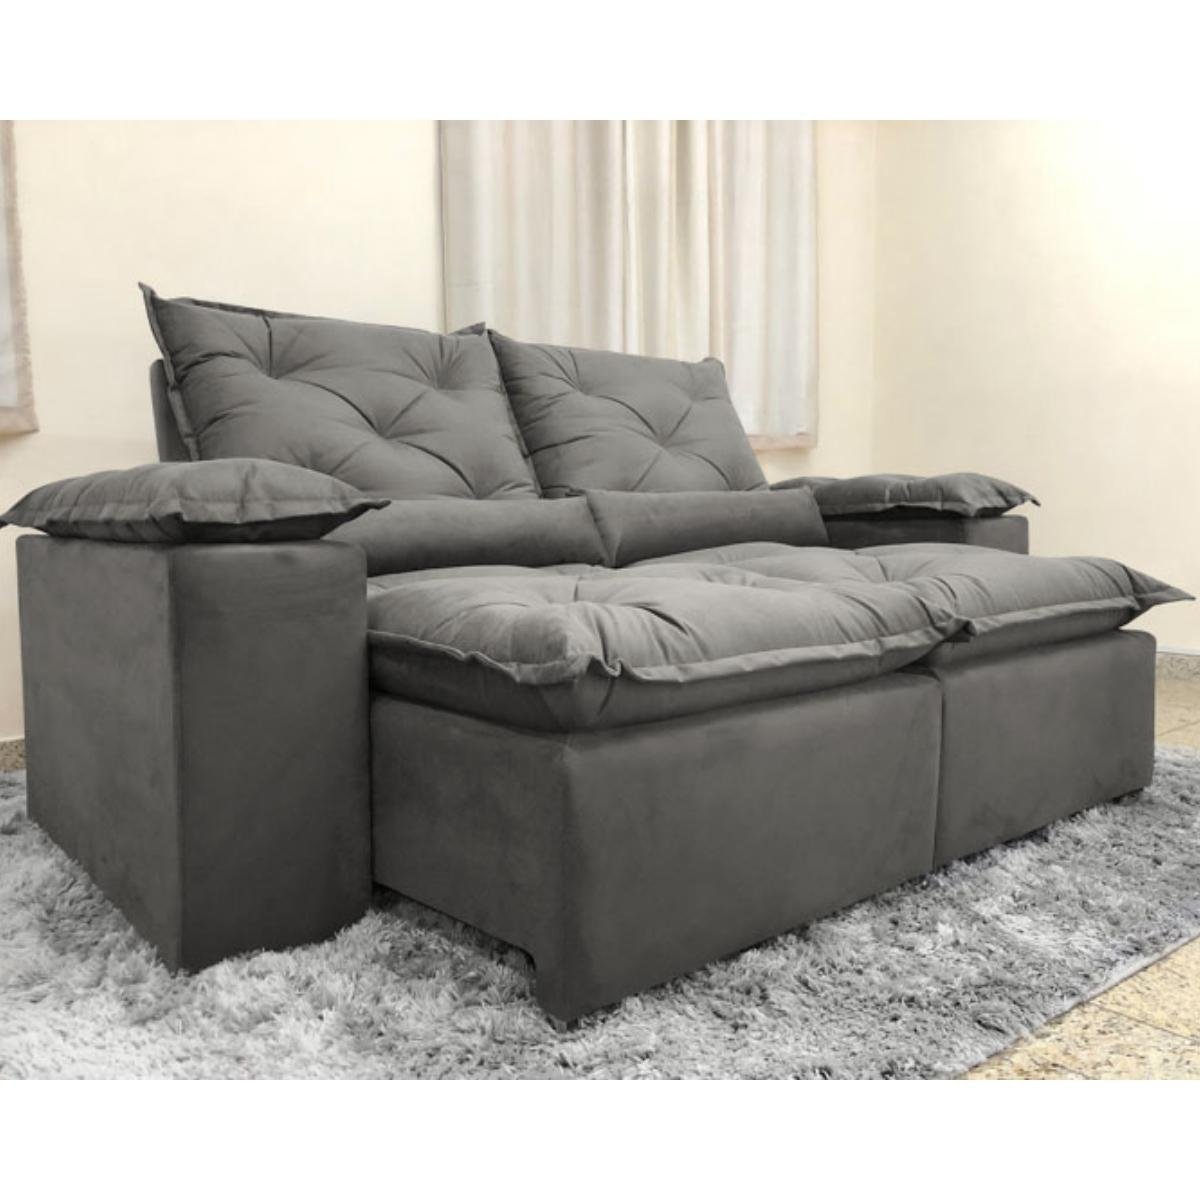 Sofa Reclinavel Retratil Design Elegante Athena 2,30m Veludo Cor:Cinza - 1